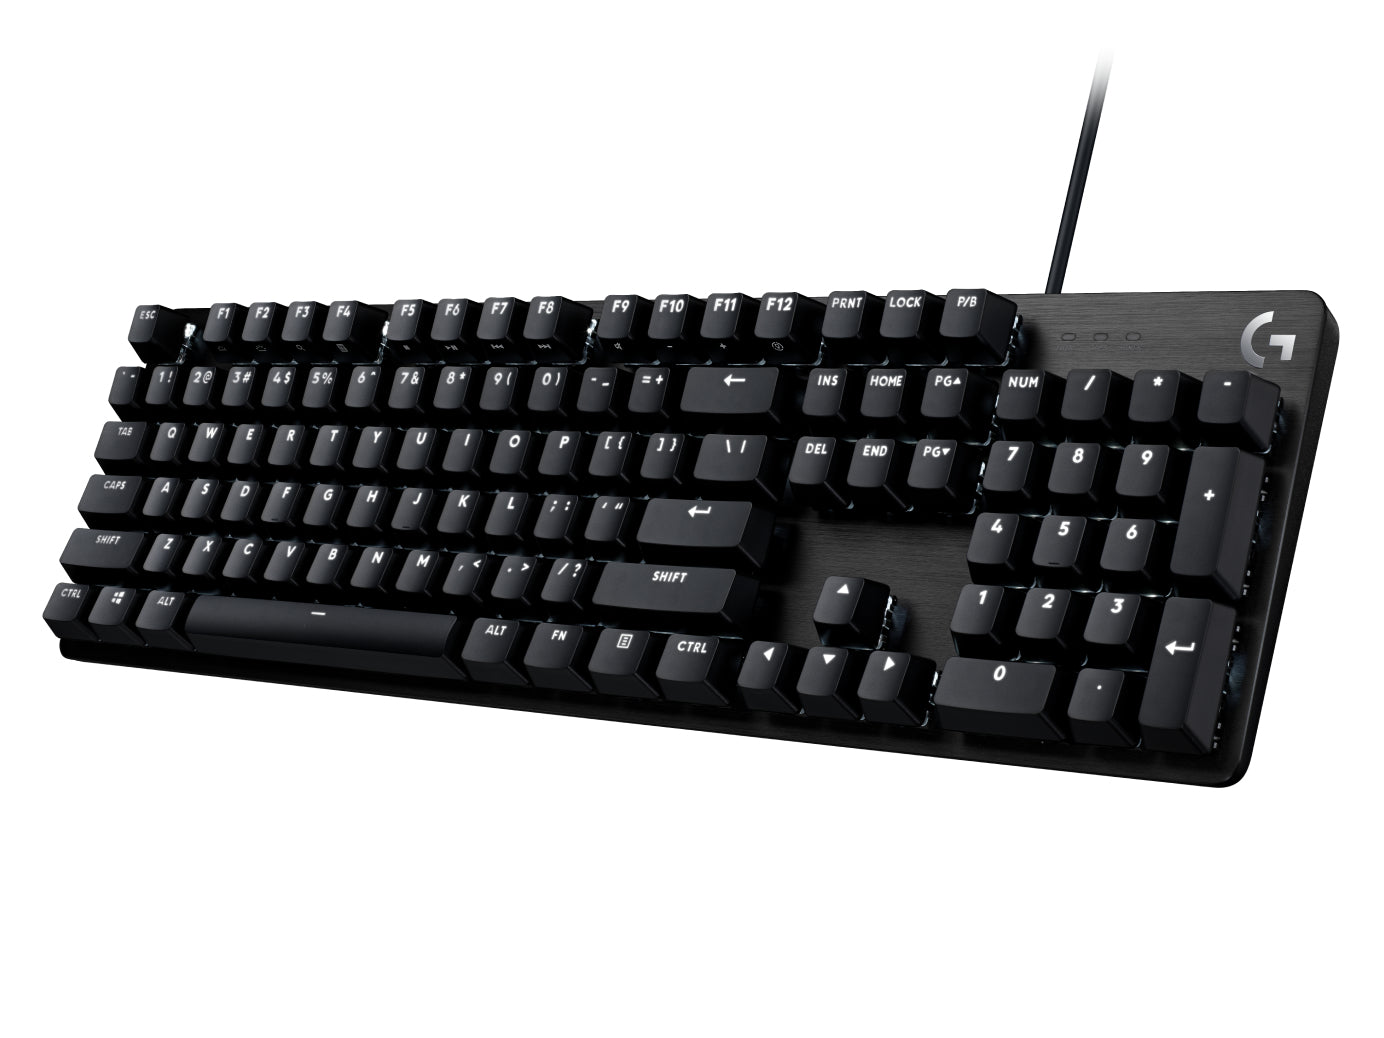 G G413 SE Mechanical Gaming Keyboard